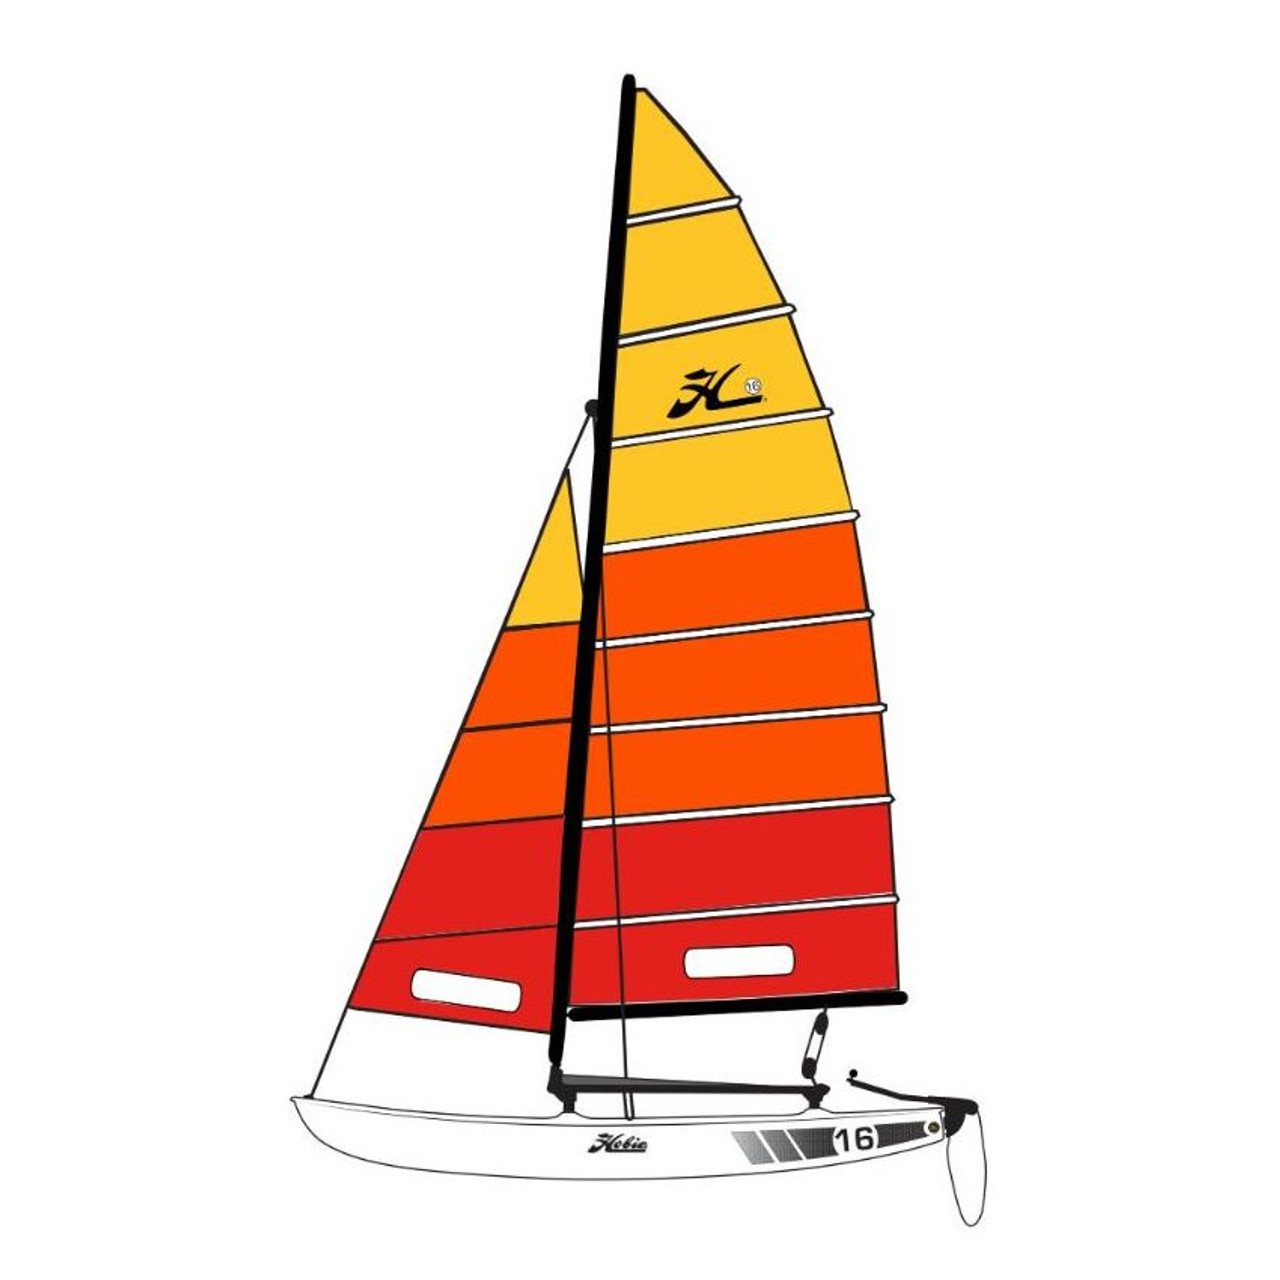 hobie 16 sail boat